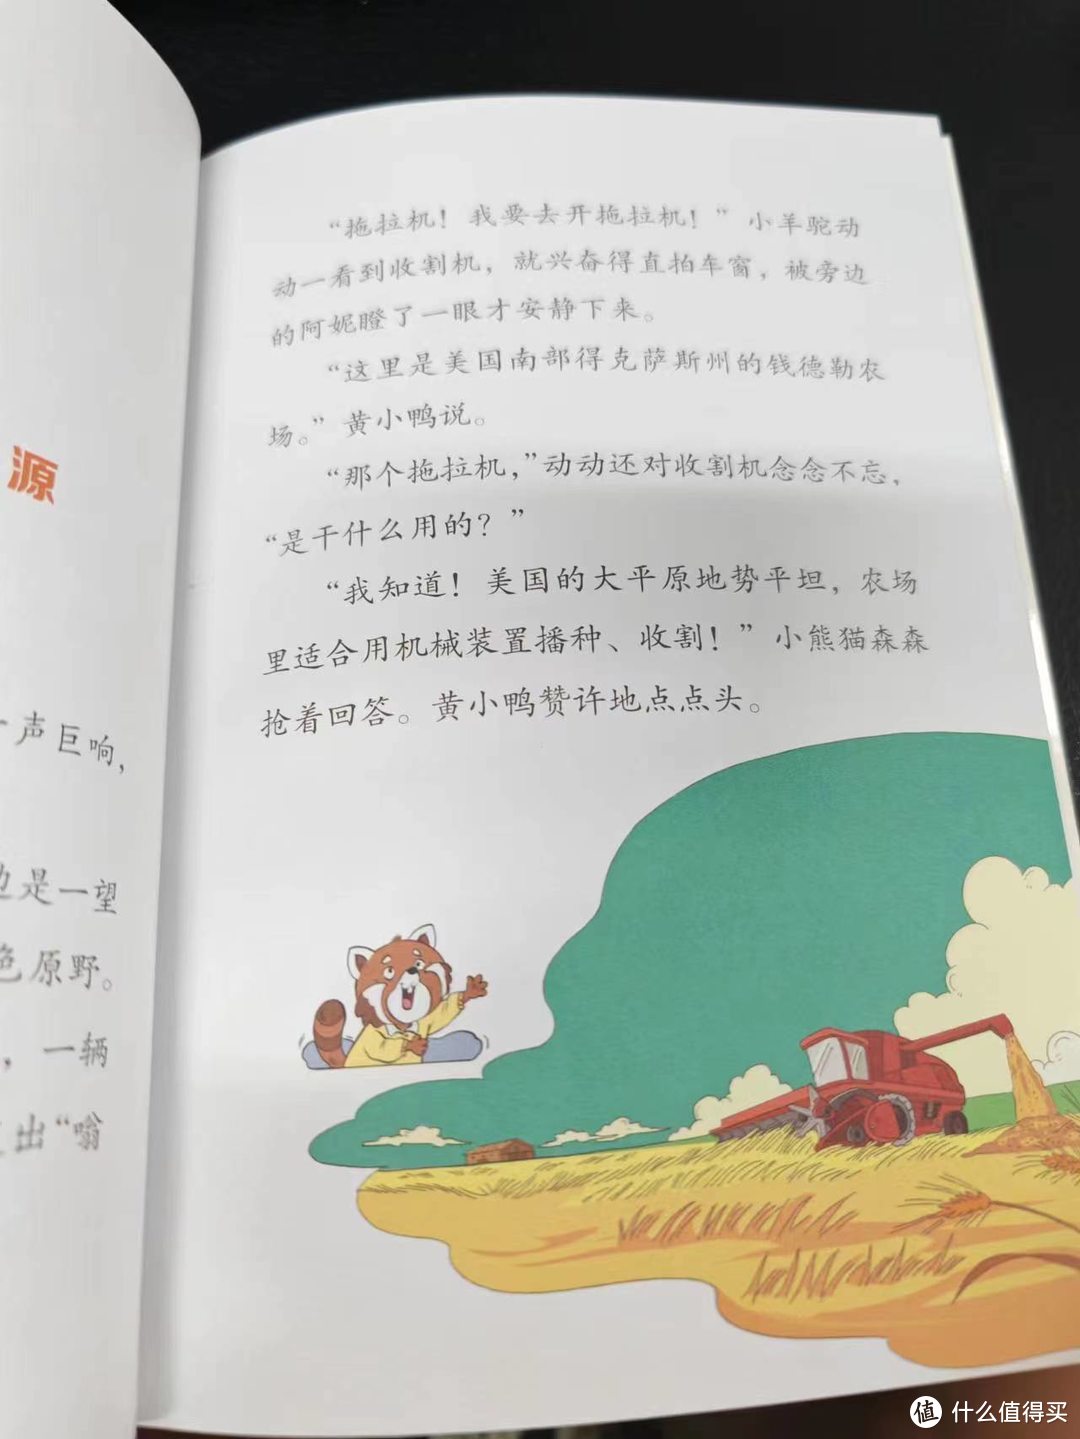 柚子暑假荐书1-《超级消防车》| 打开好奇之窗，激发学习科学的兴趣